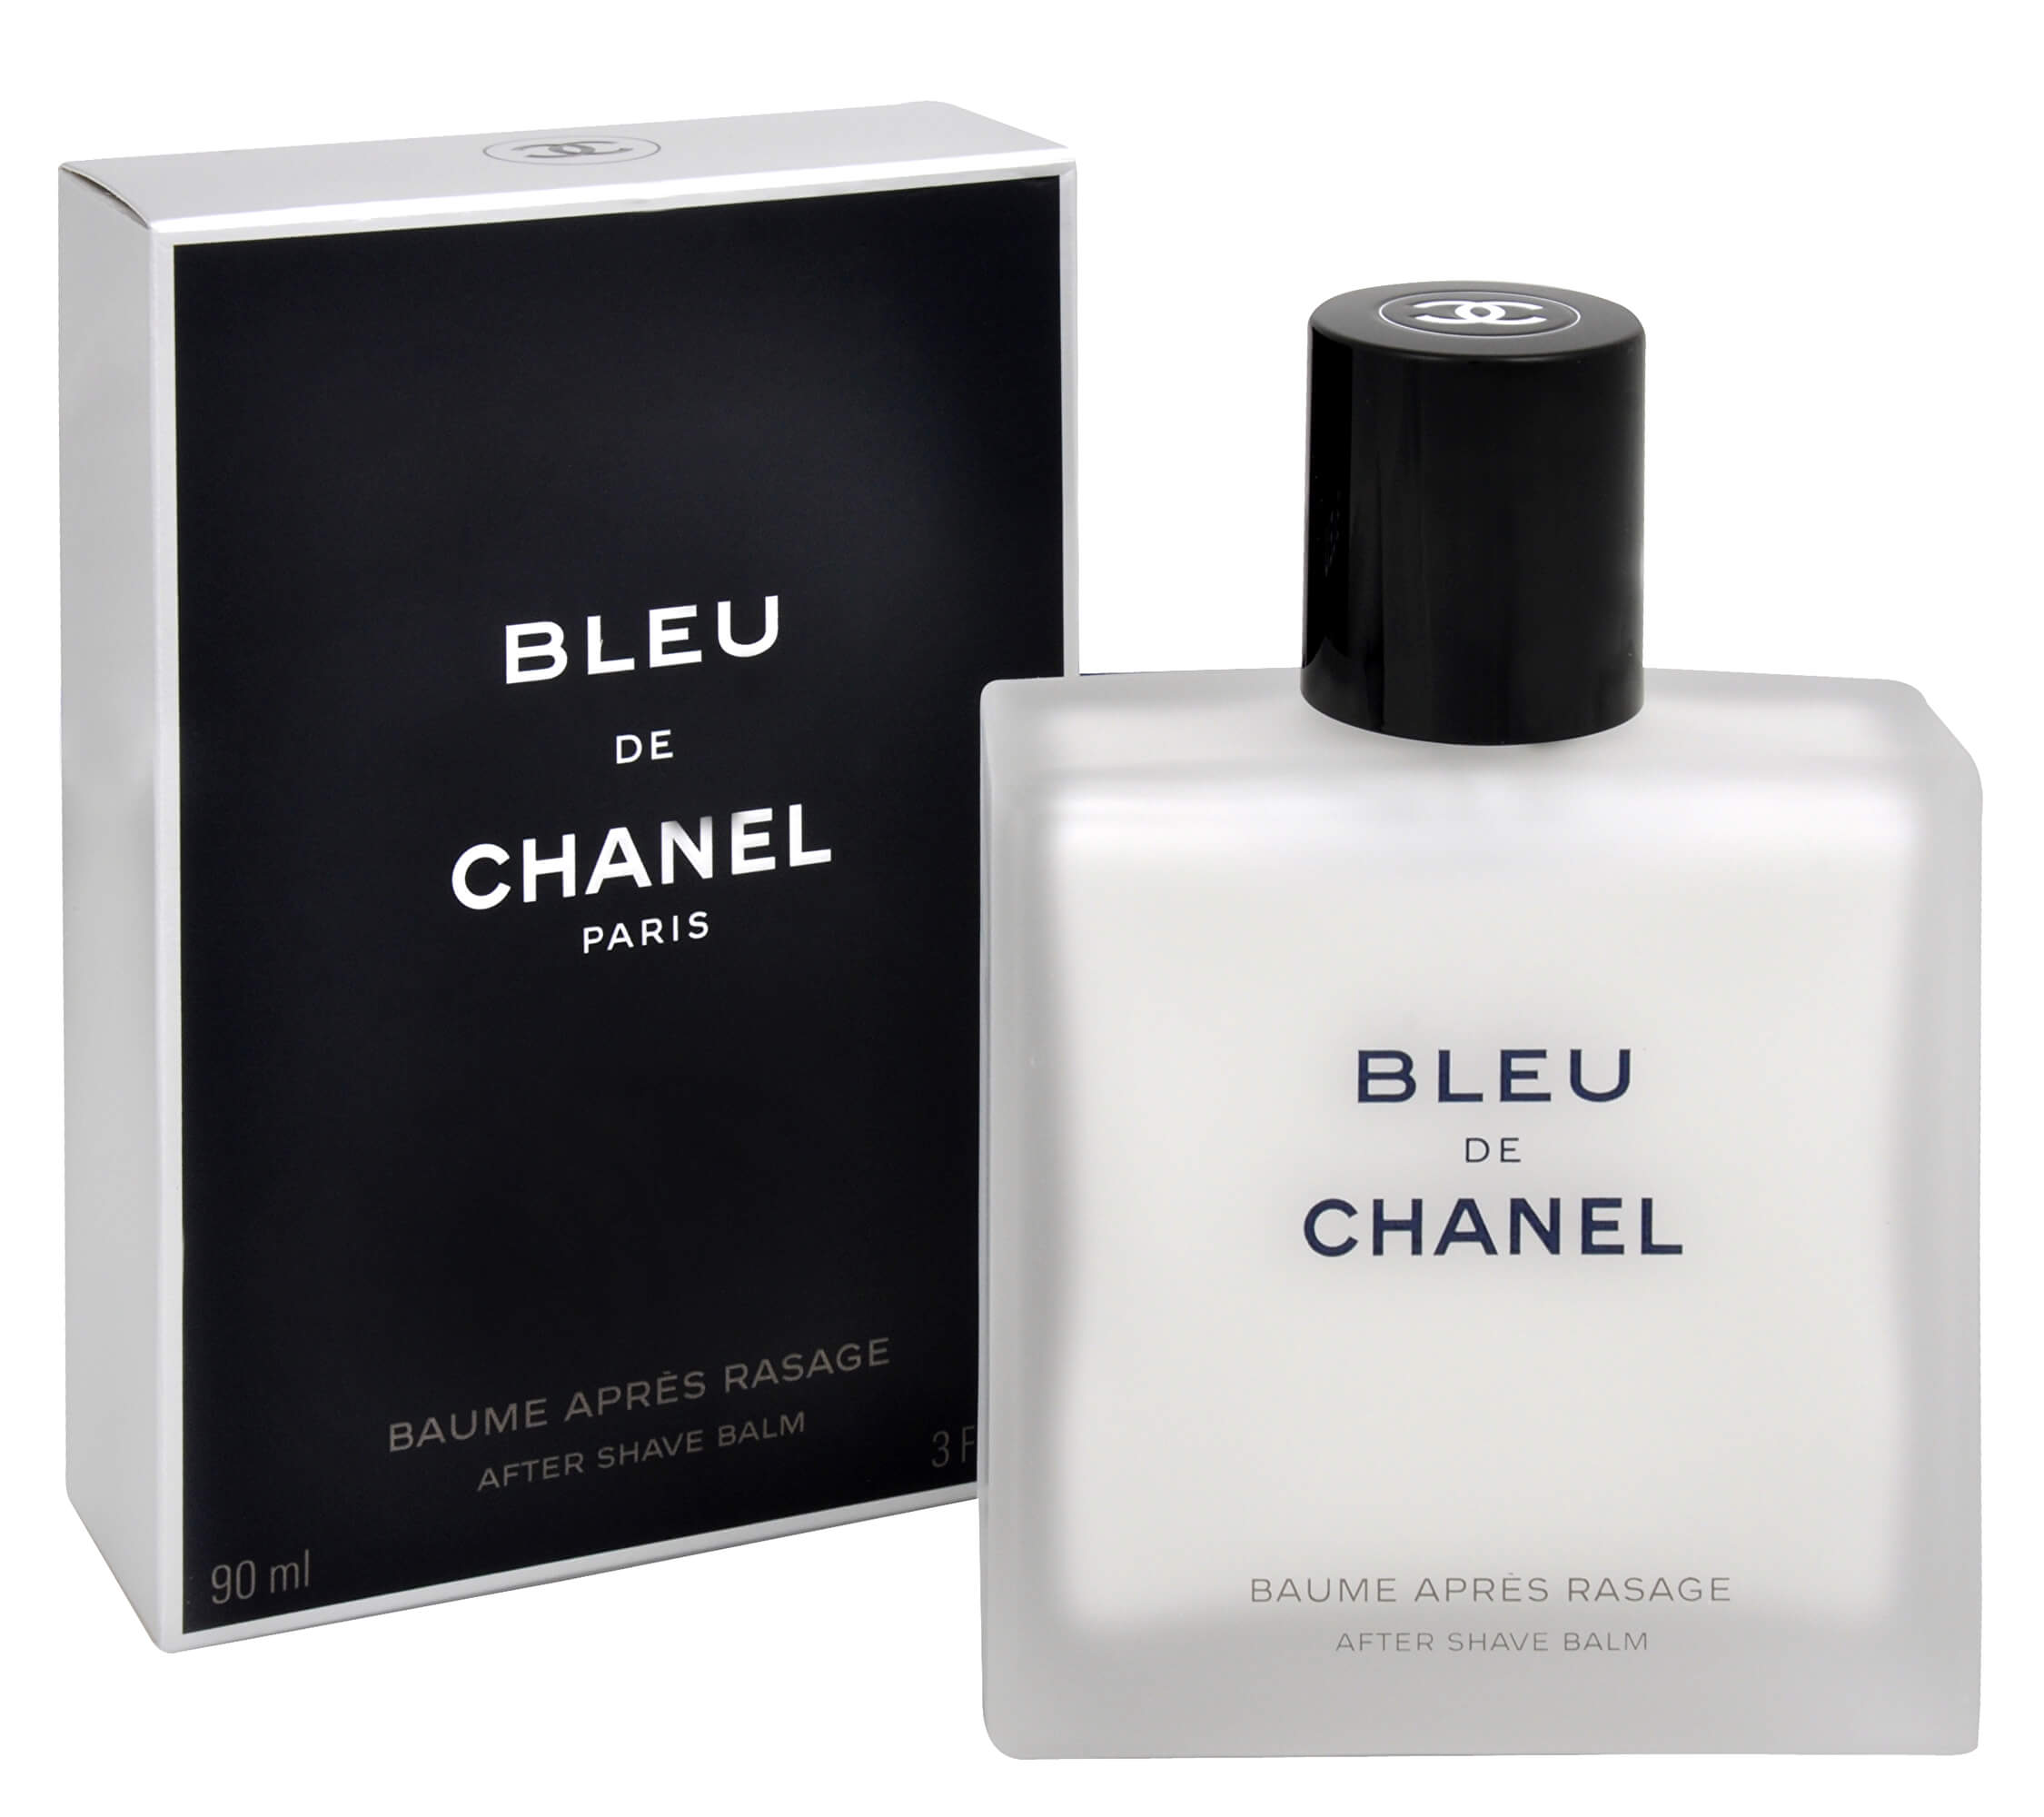 Chanel bleu отзывы. Лосьон Блю де Шанель. Chanel bleu de Chanel. Лосьон после бритья Blue de Chanel. Blue de Chanel мужские духи.